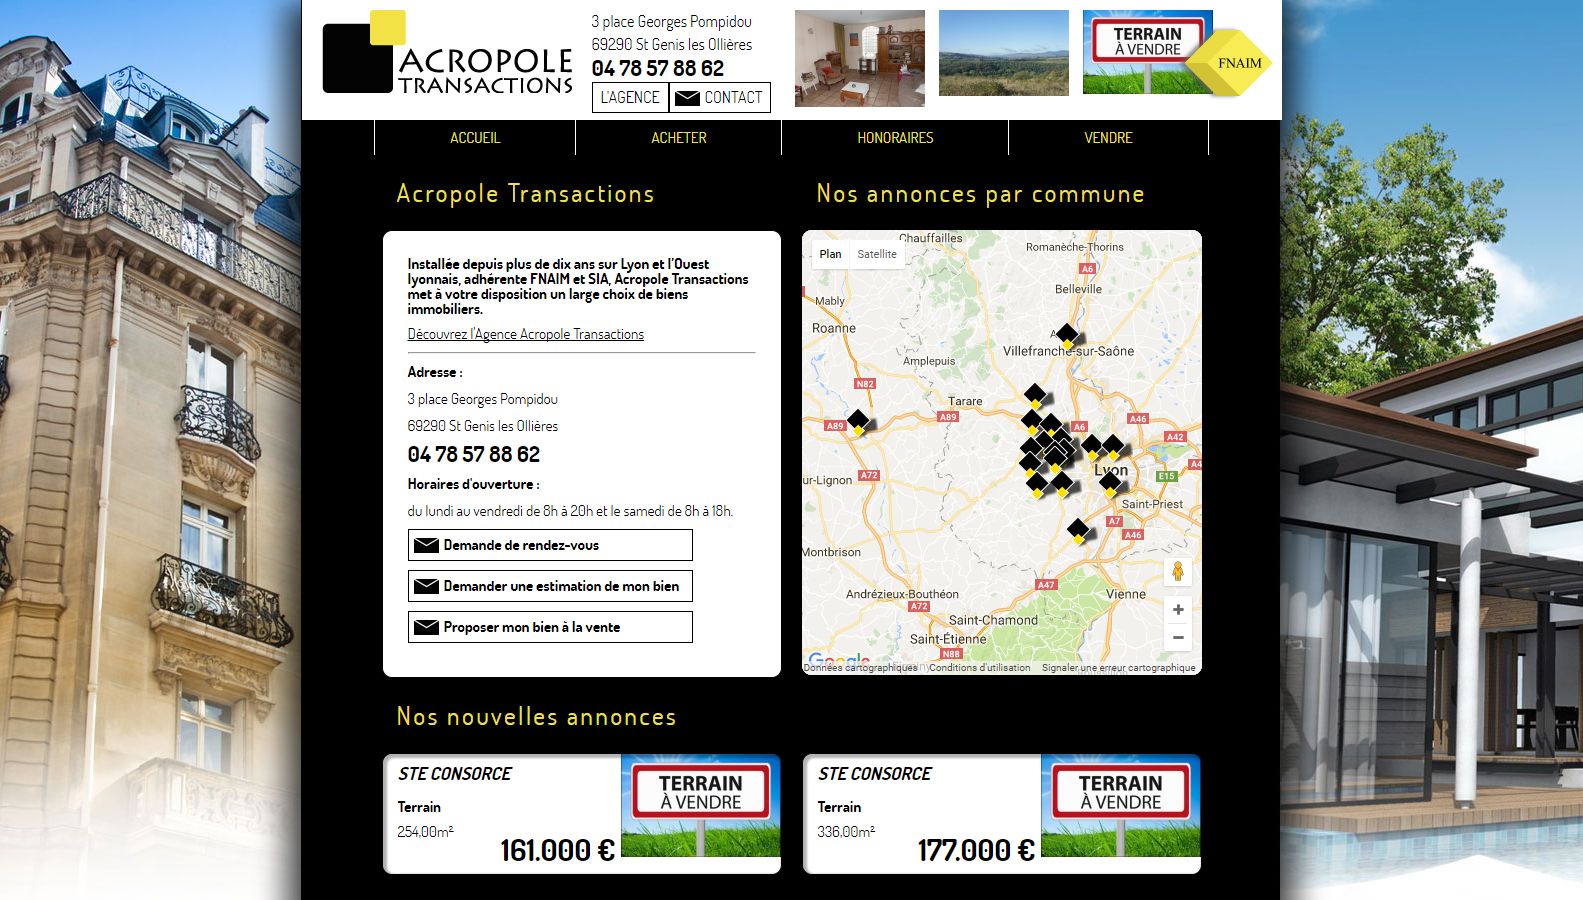 Réalisation RP2I (Romaric Pibolleau): Acropole Transactions - Site vitrine avec interfaçage avec Logiciel gestion annonces immobilières